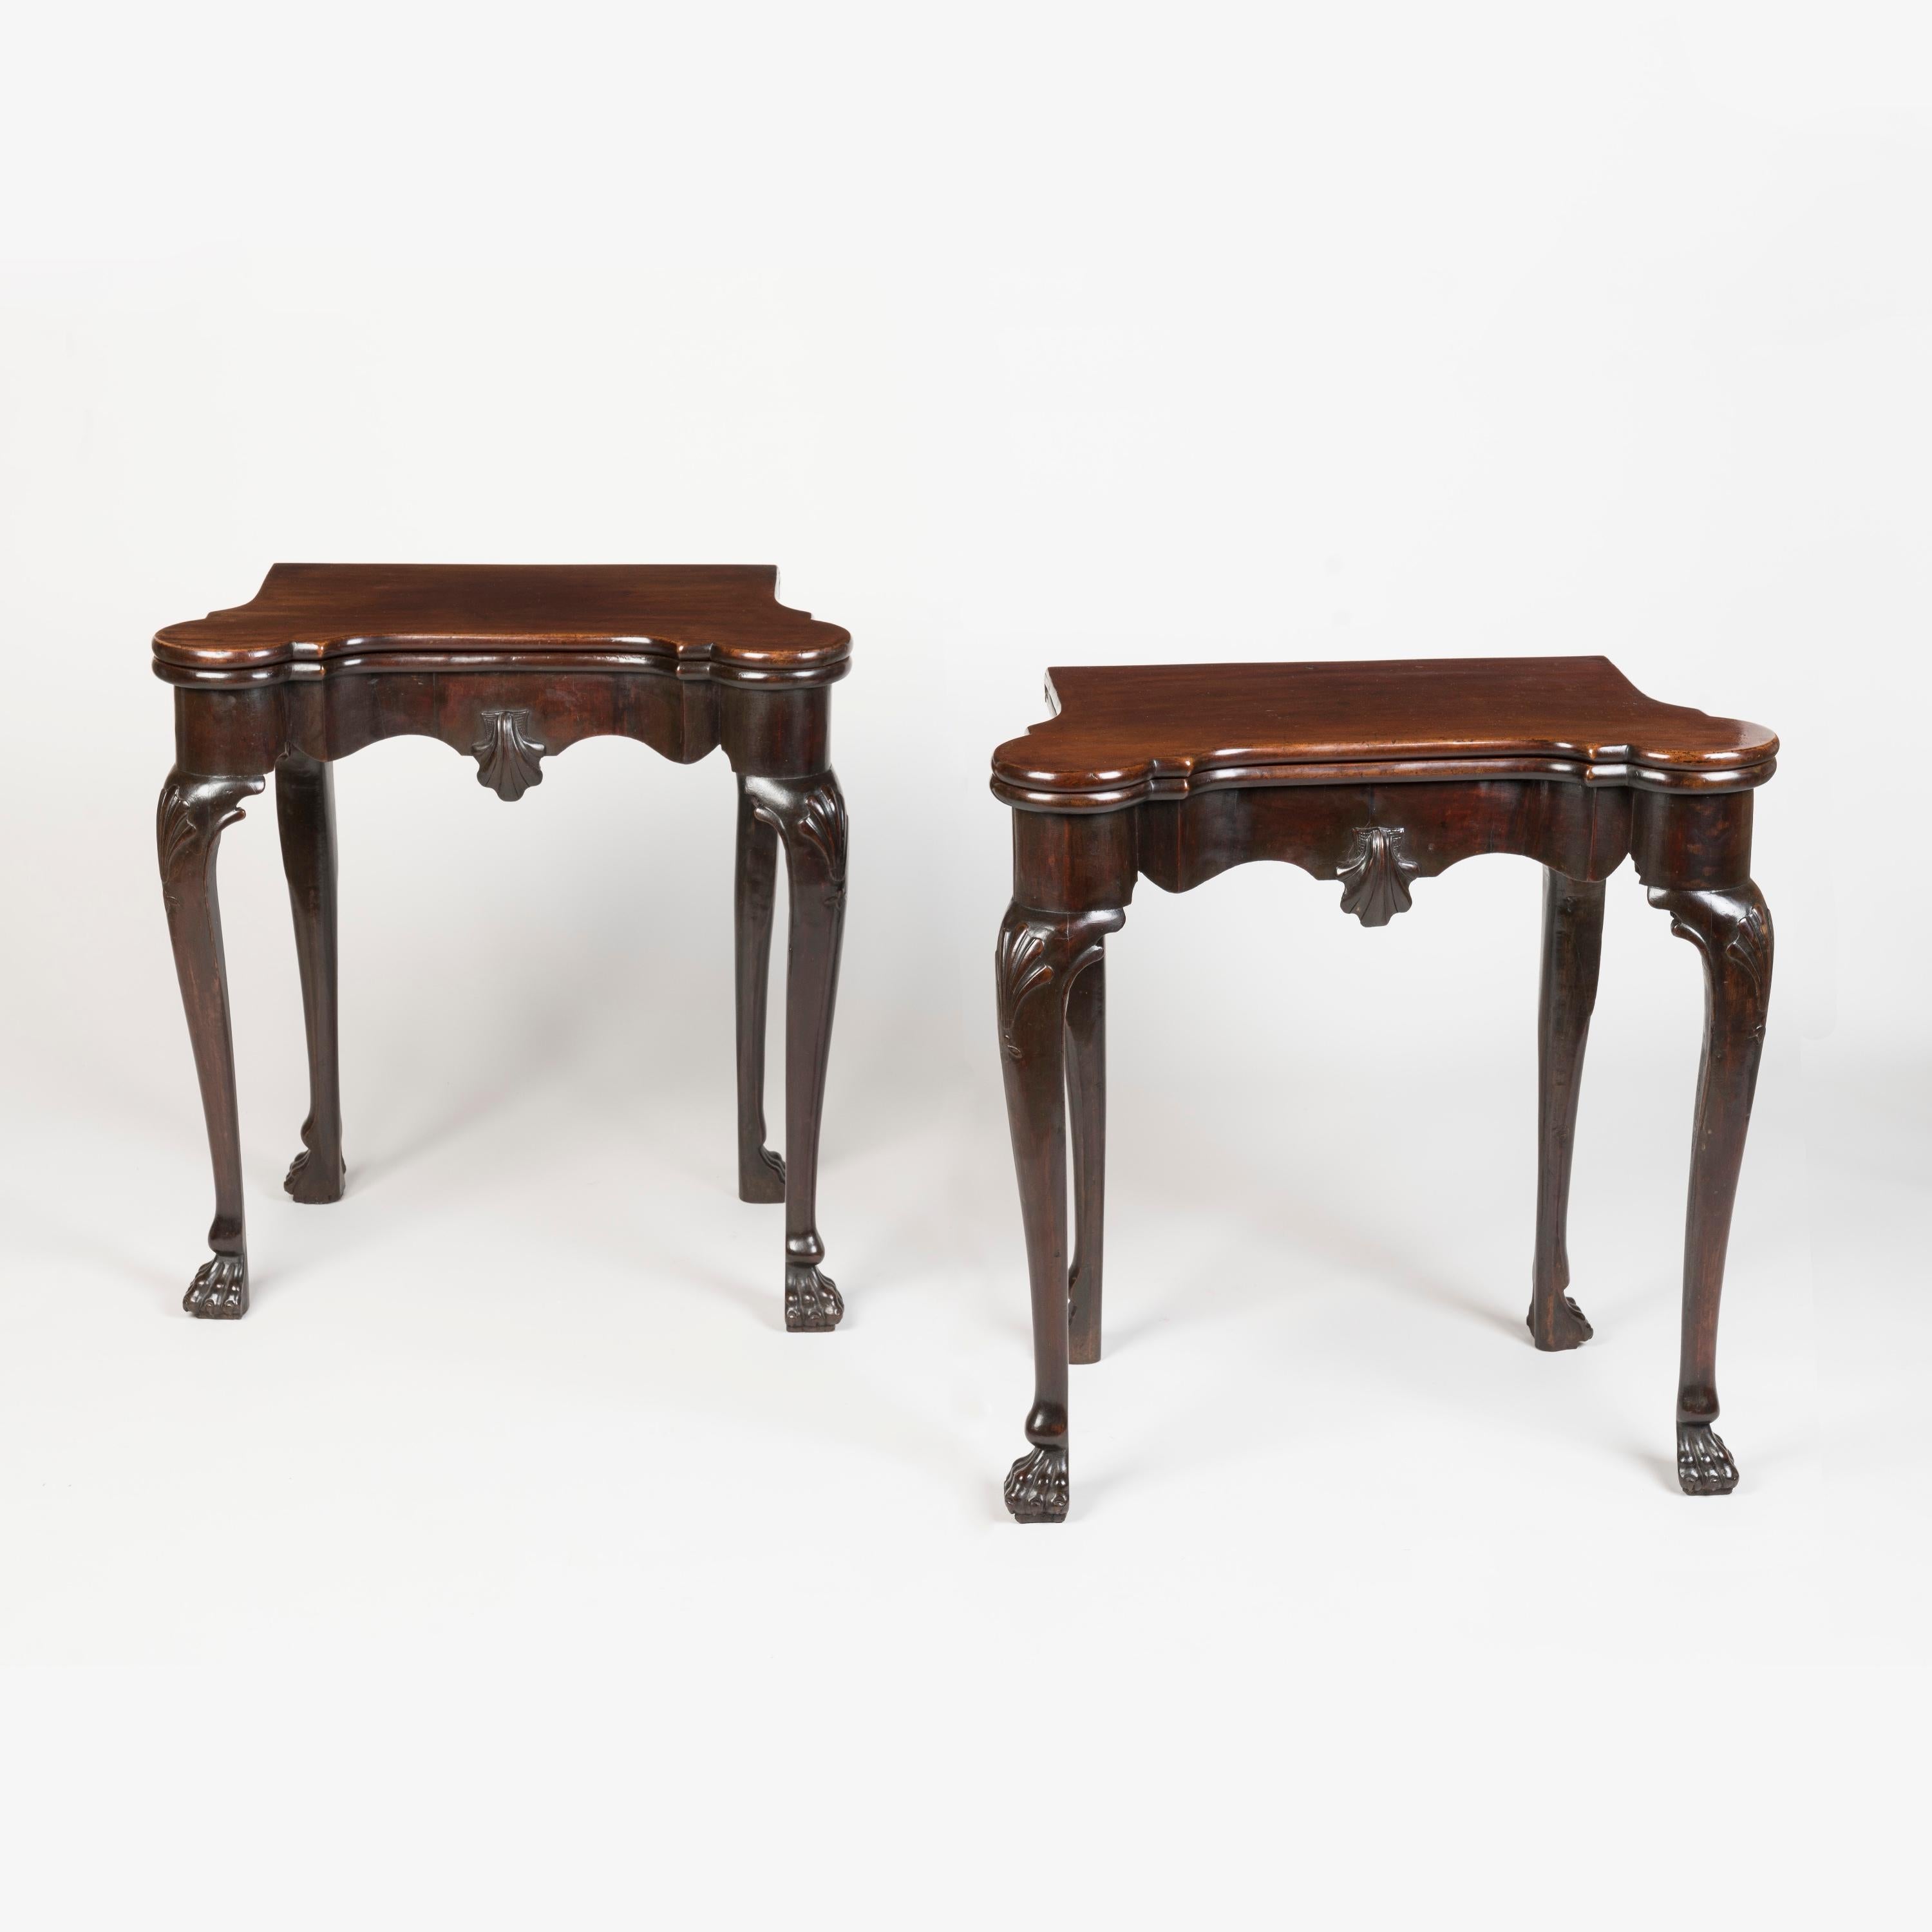 Paire de tables à cartes irlandaises en acajou de style George II

De taille exceptionnellement petite, ces tables à cartes pliantes du XVIIIe siècle, en bois riche et sombre, reposent sur des pieds cabriole élégamment dessinés et sculptés d'une